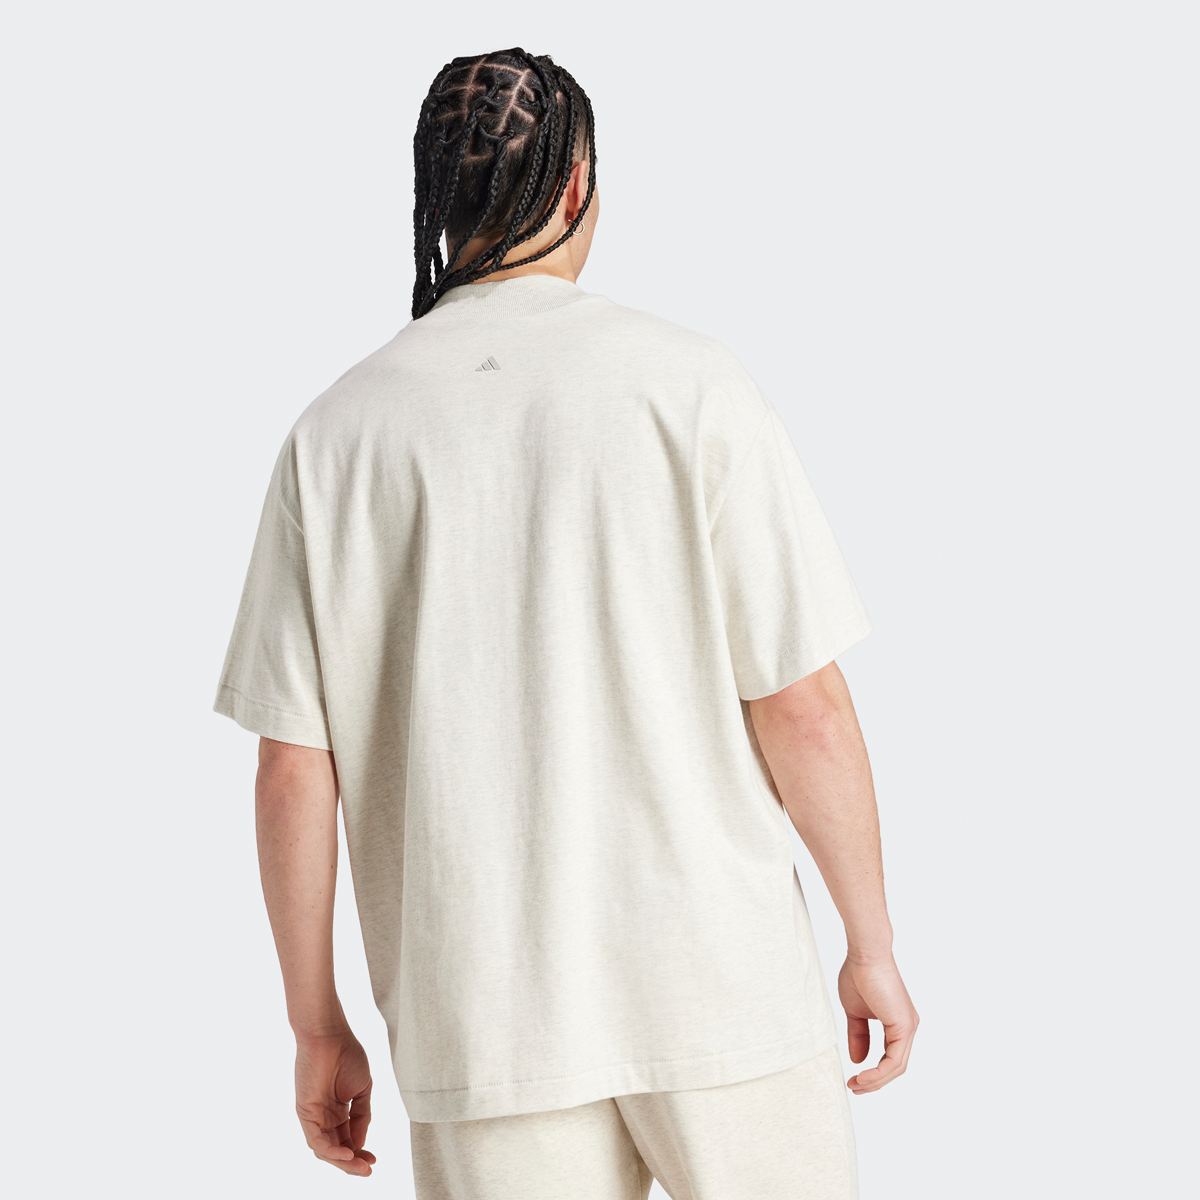 adidas Originals One Cotton Jersey T-shirt T-shirts Heren cream white mel. maat: S beschikbare maaten:S M XL